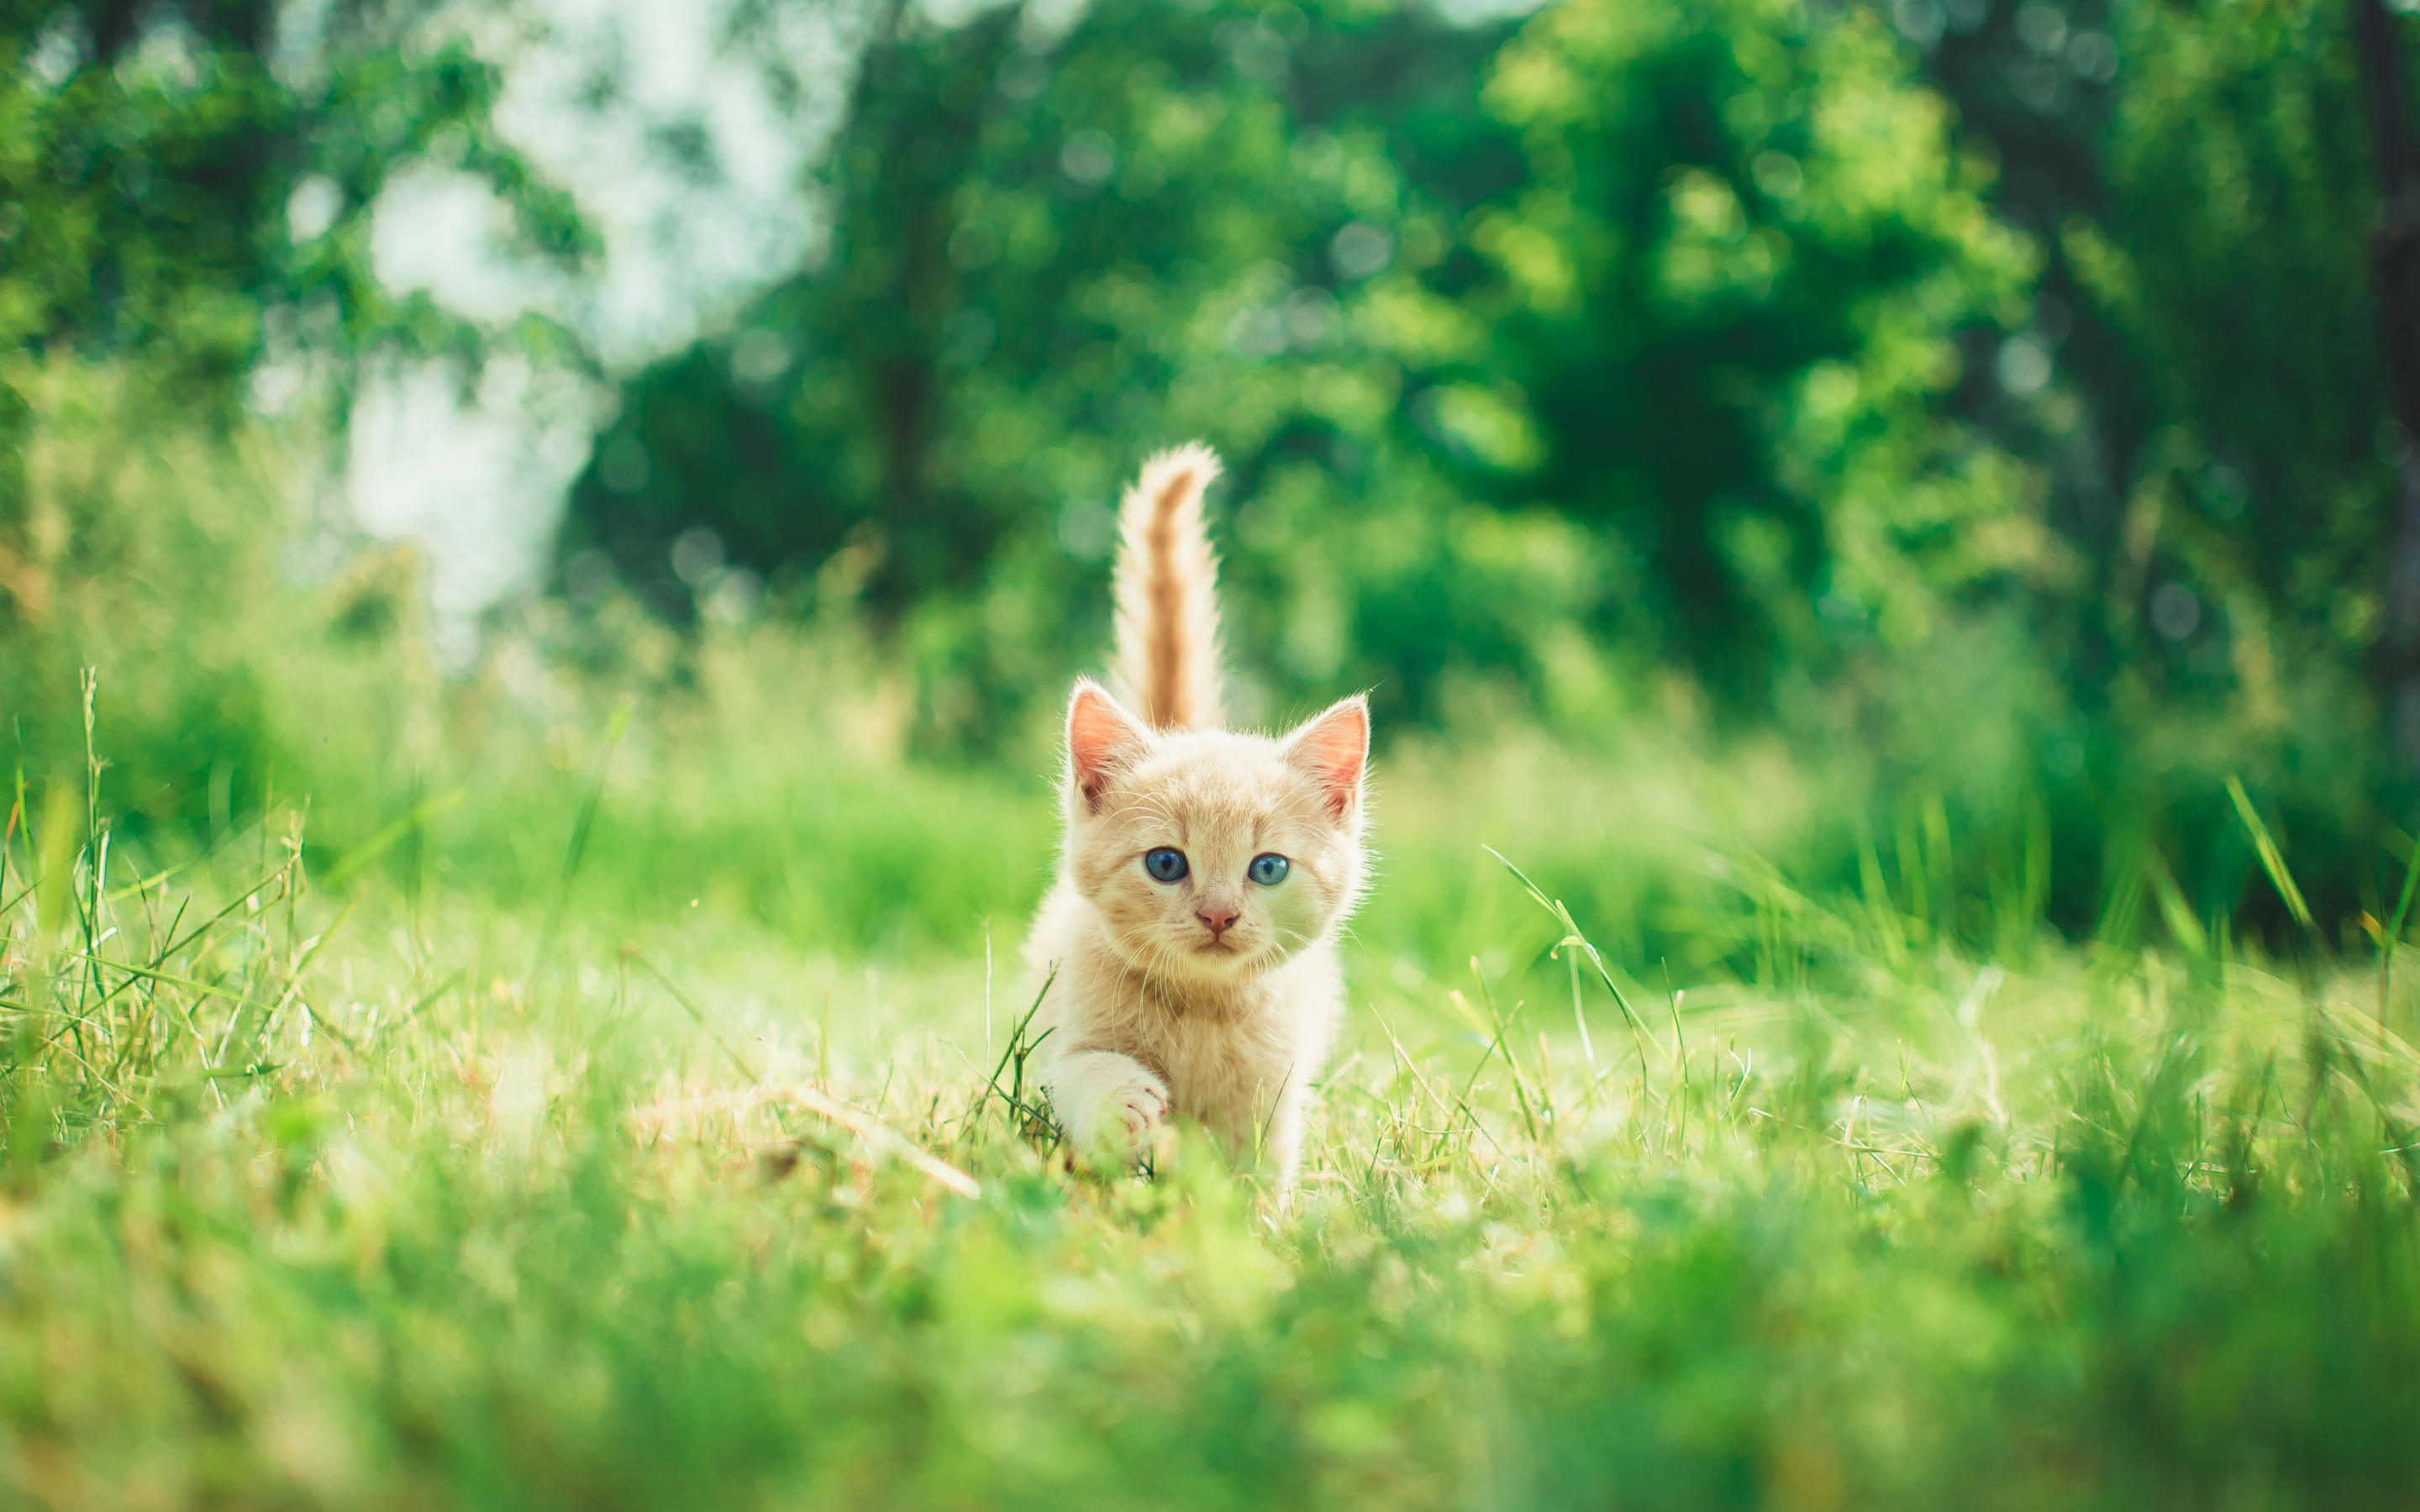 Yêu mèo? Hãy cập nhật bộ ảnh nền siêu dễ thương với chú mèo nhỏ xinh đẹp. Hình ảnh mềm mại, tinh tế và đáng yêu này sẽ đem lại một cảm giác ấm áp cho không gian làm việc của bạn.